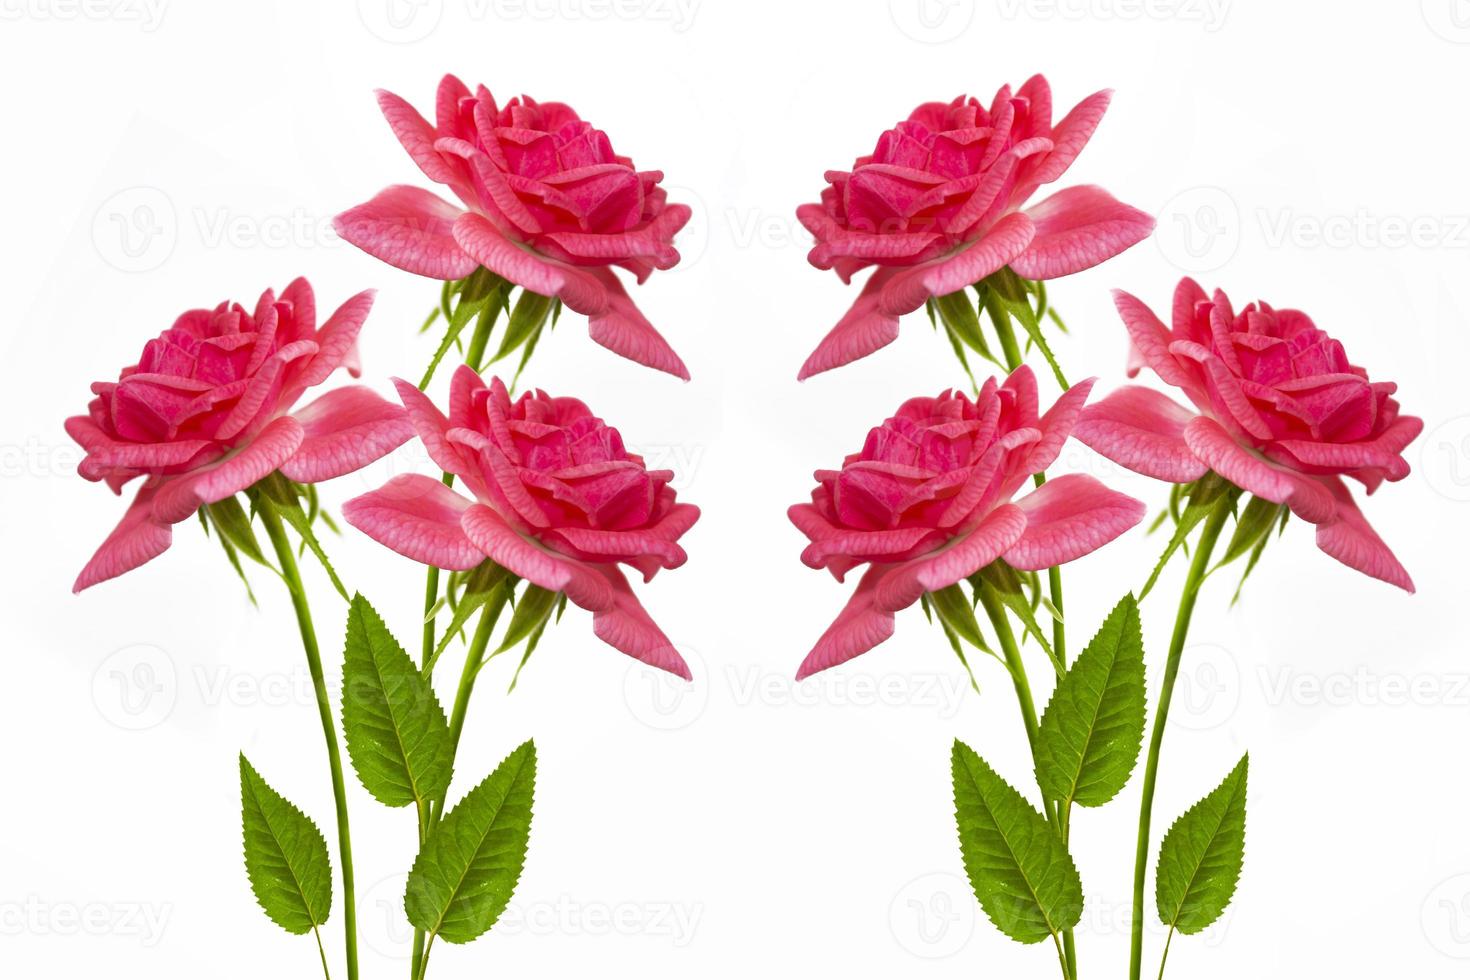 vijf rozen op een witte achtergrond. bloemen achtergrond foto